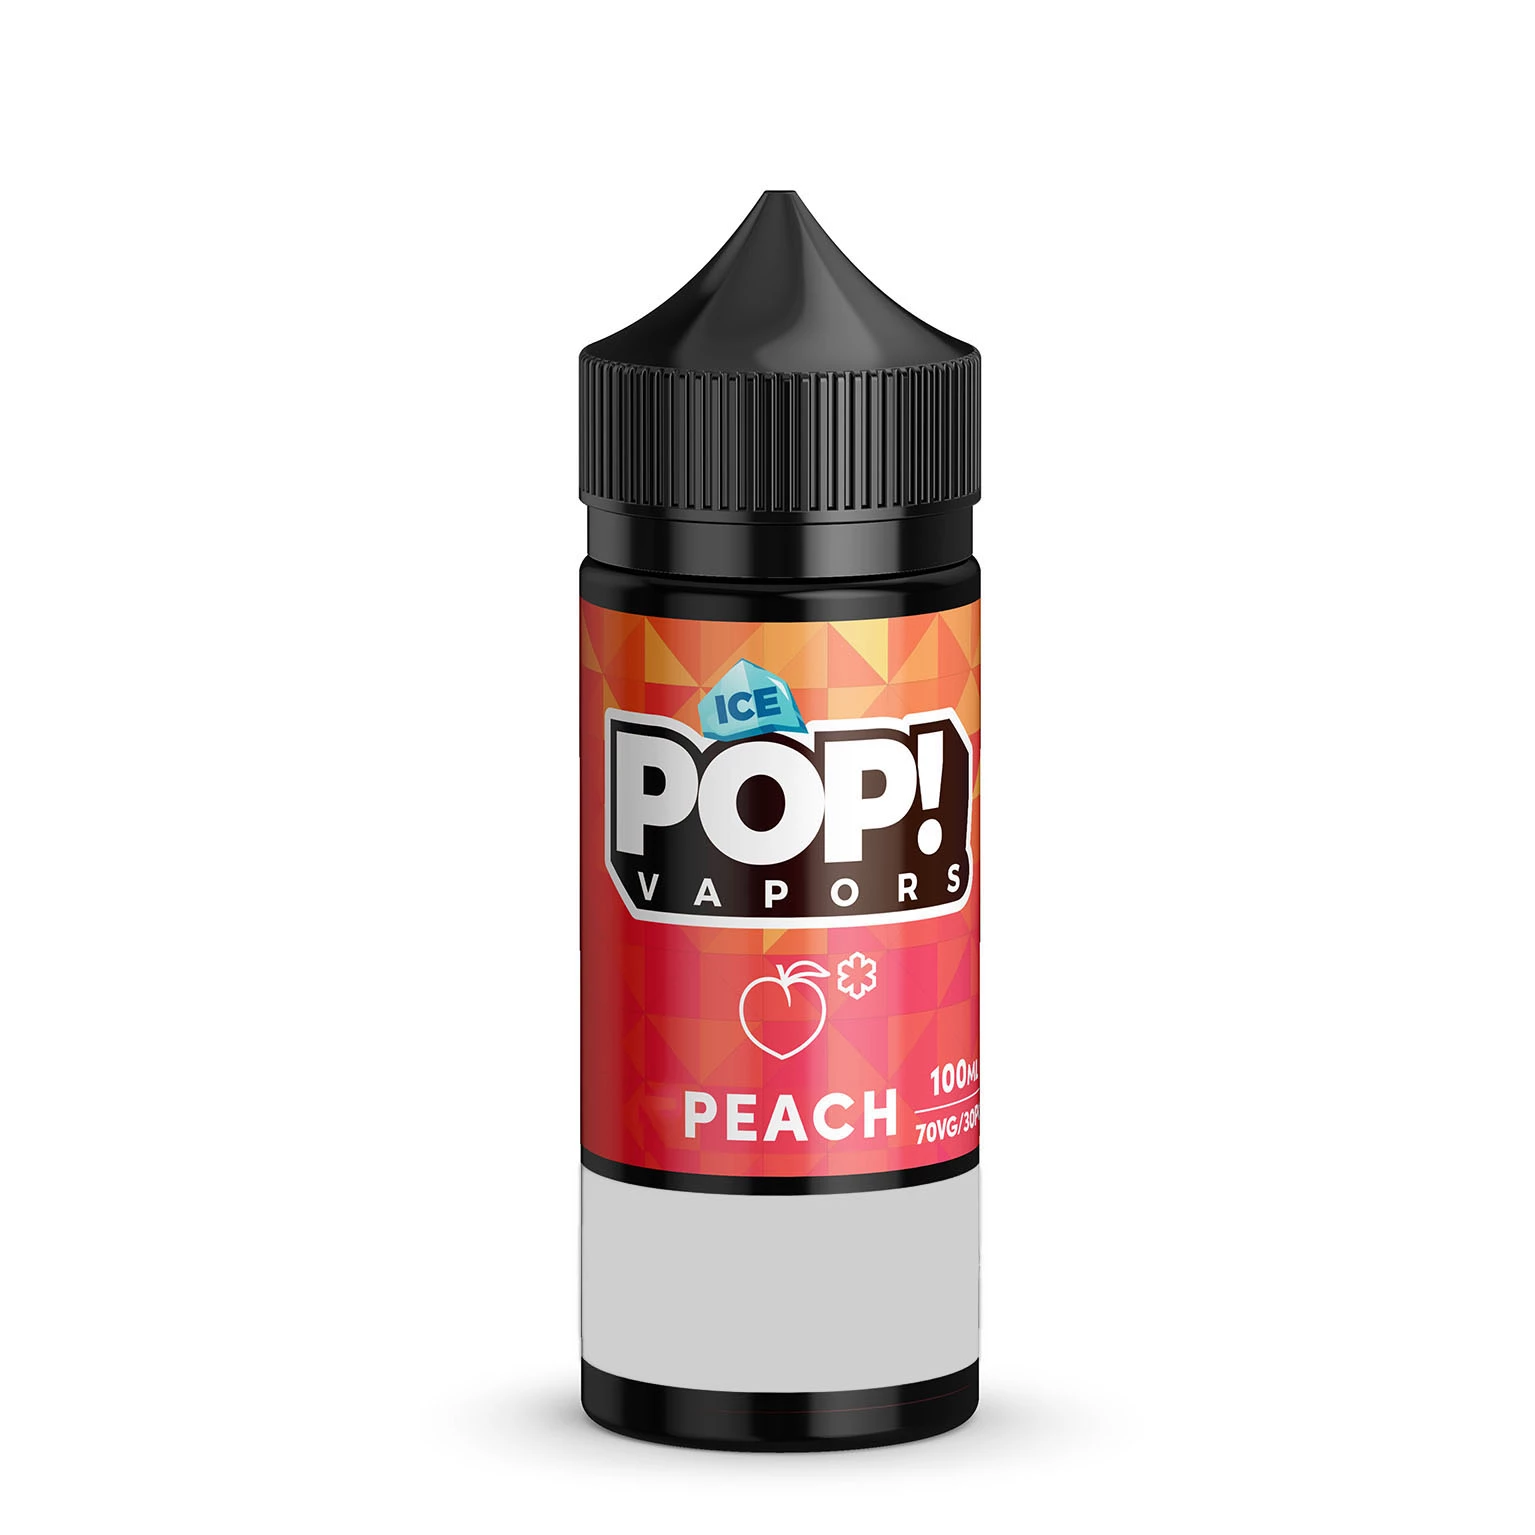 Iced-Peach-Pop!Vapors